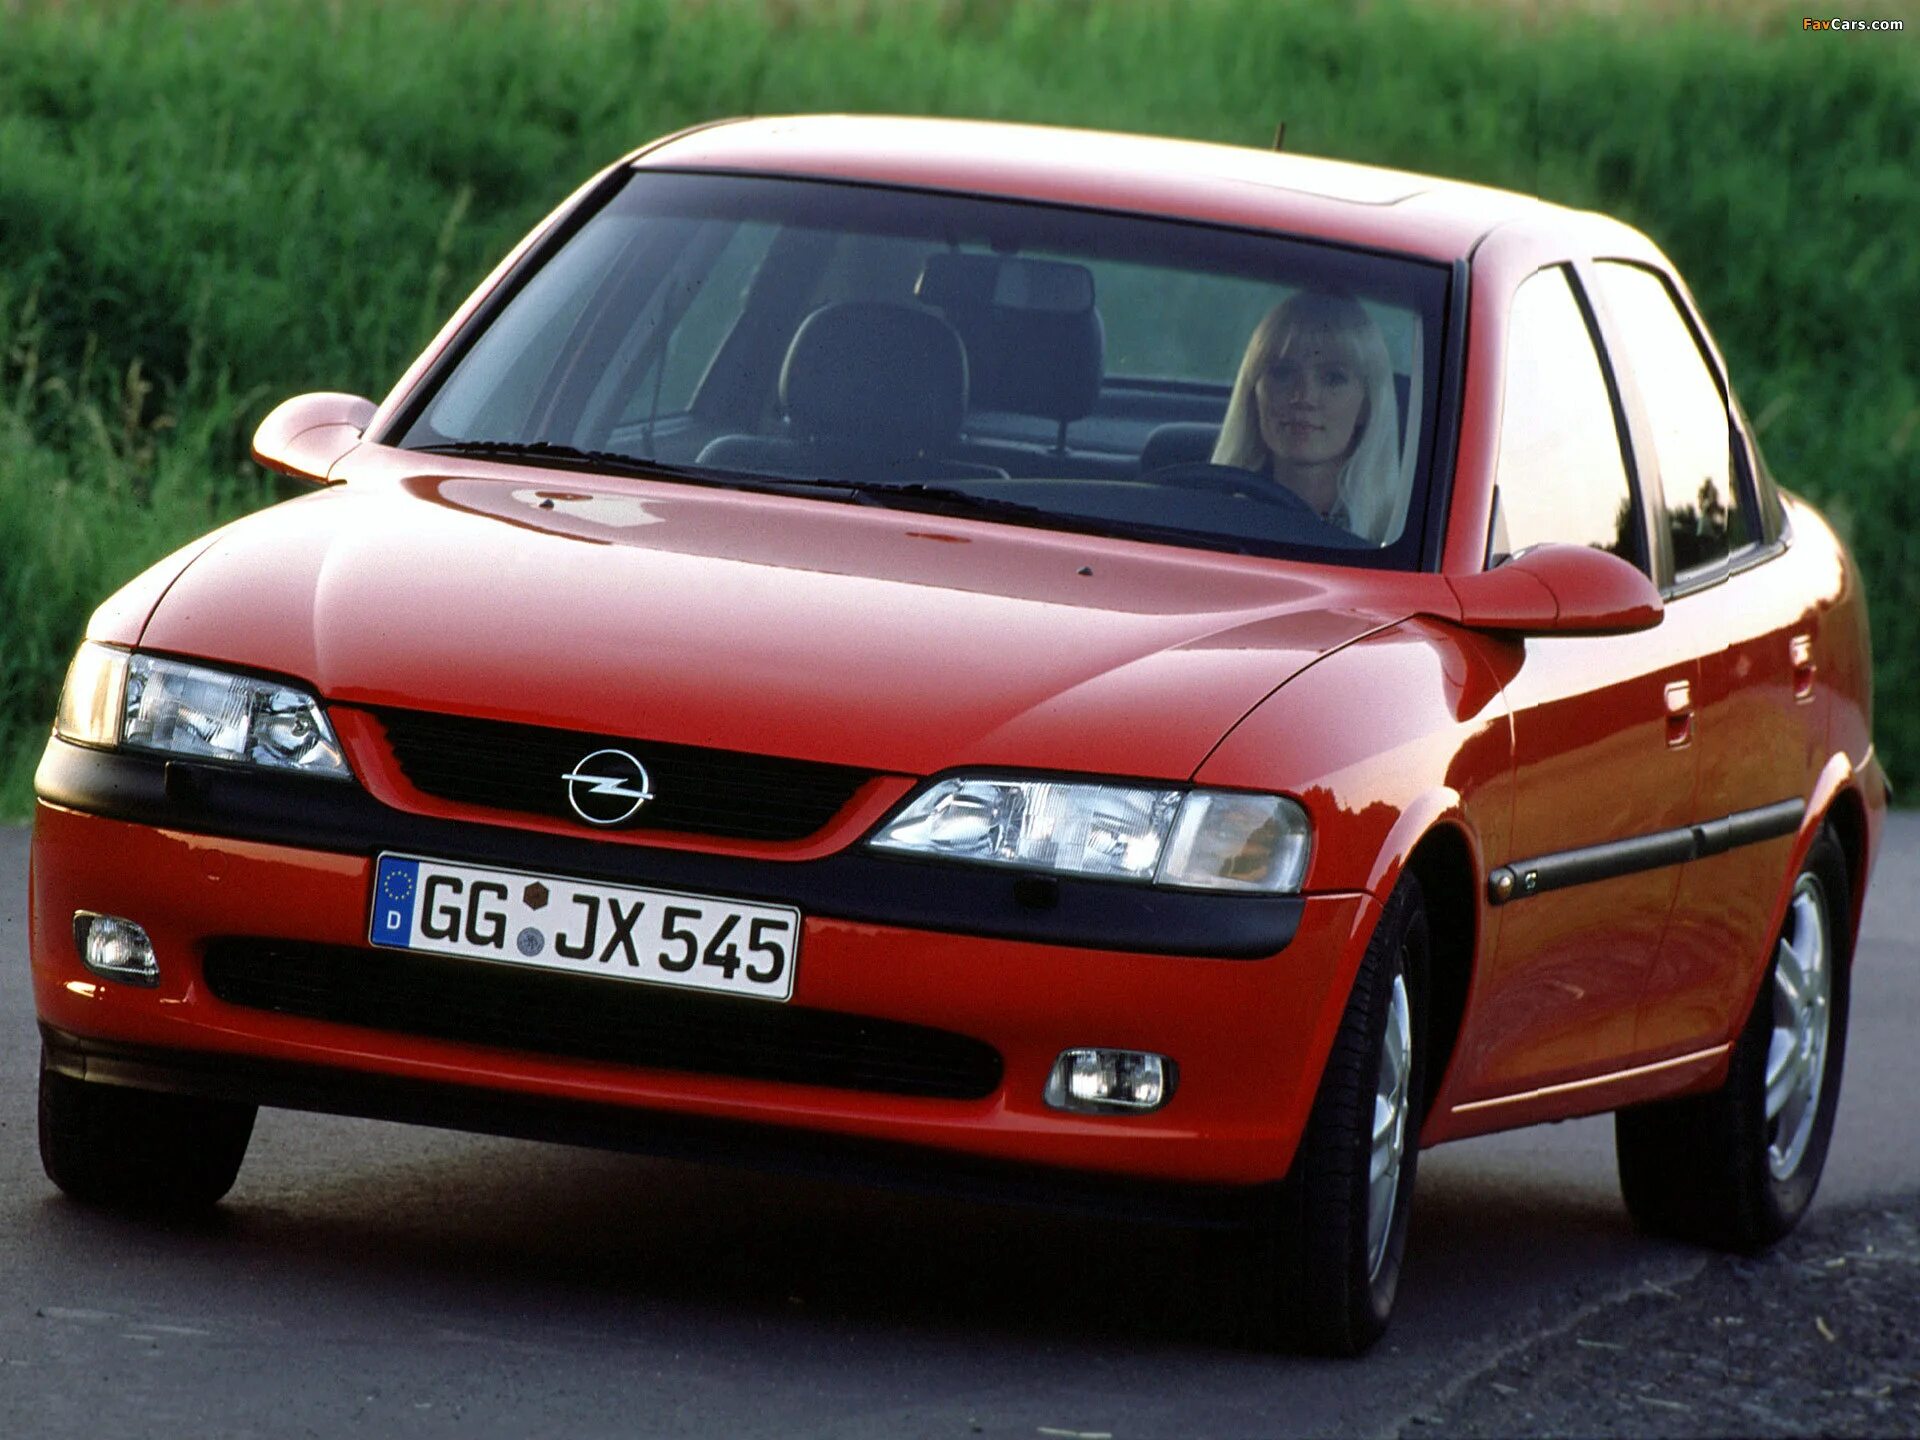 Opel Vectra 1995. Opel Vectra b 1995-2002. Opel Vectra b 1.6. Opel Vectra 1.